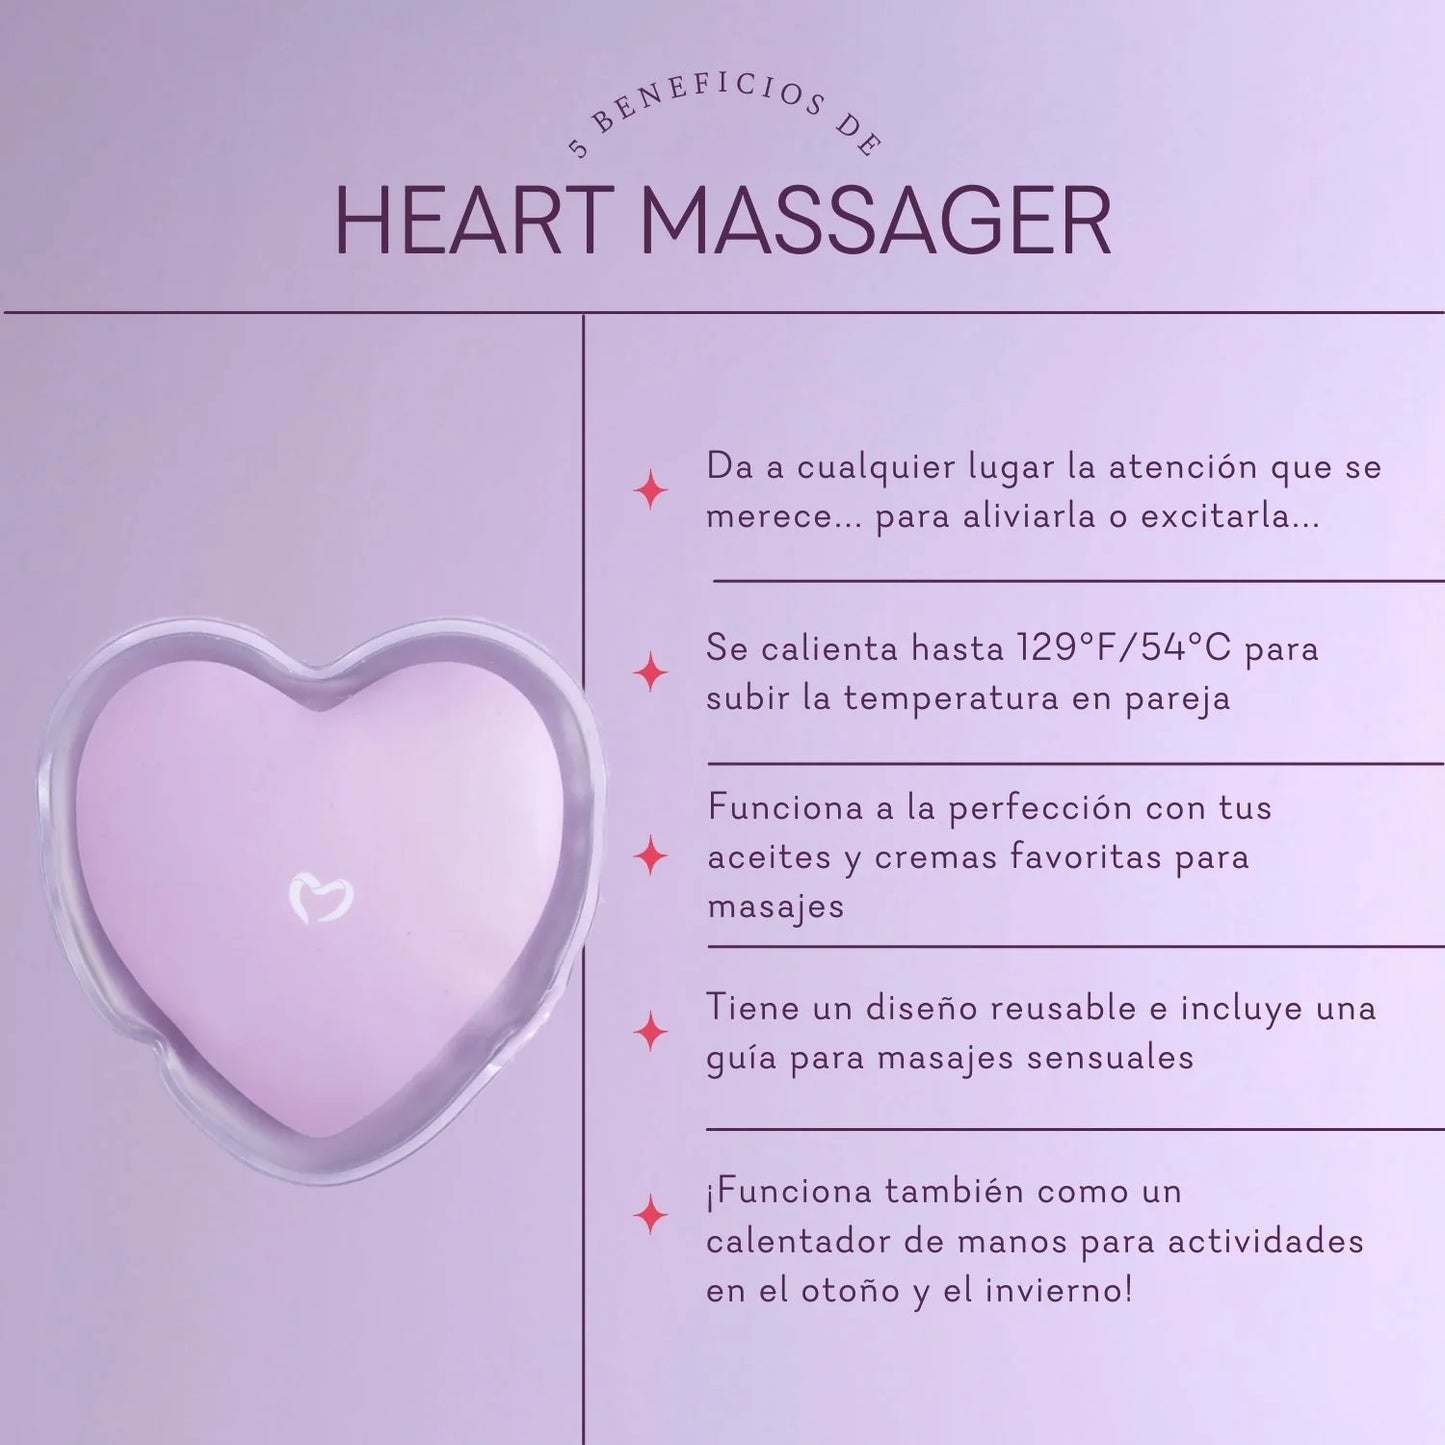 Heart Massager Heat Pack (Compresa caliente para masajes)